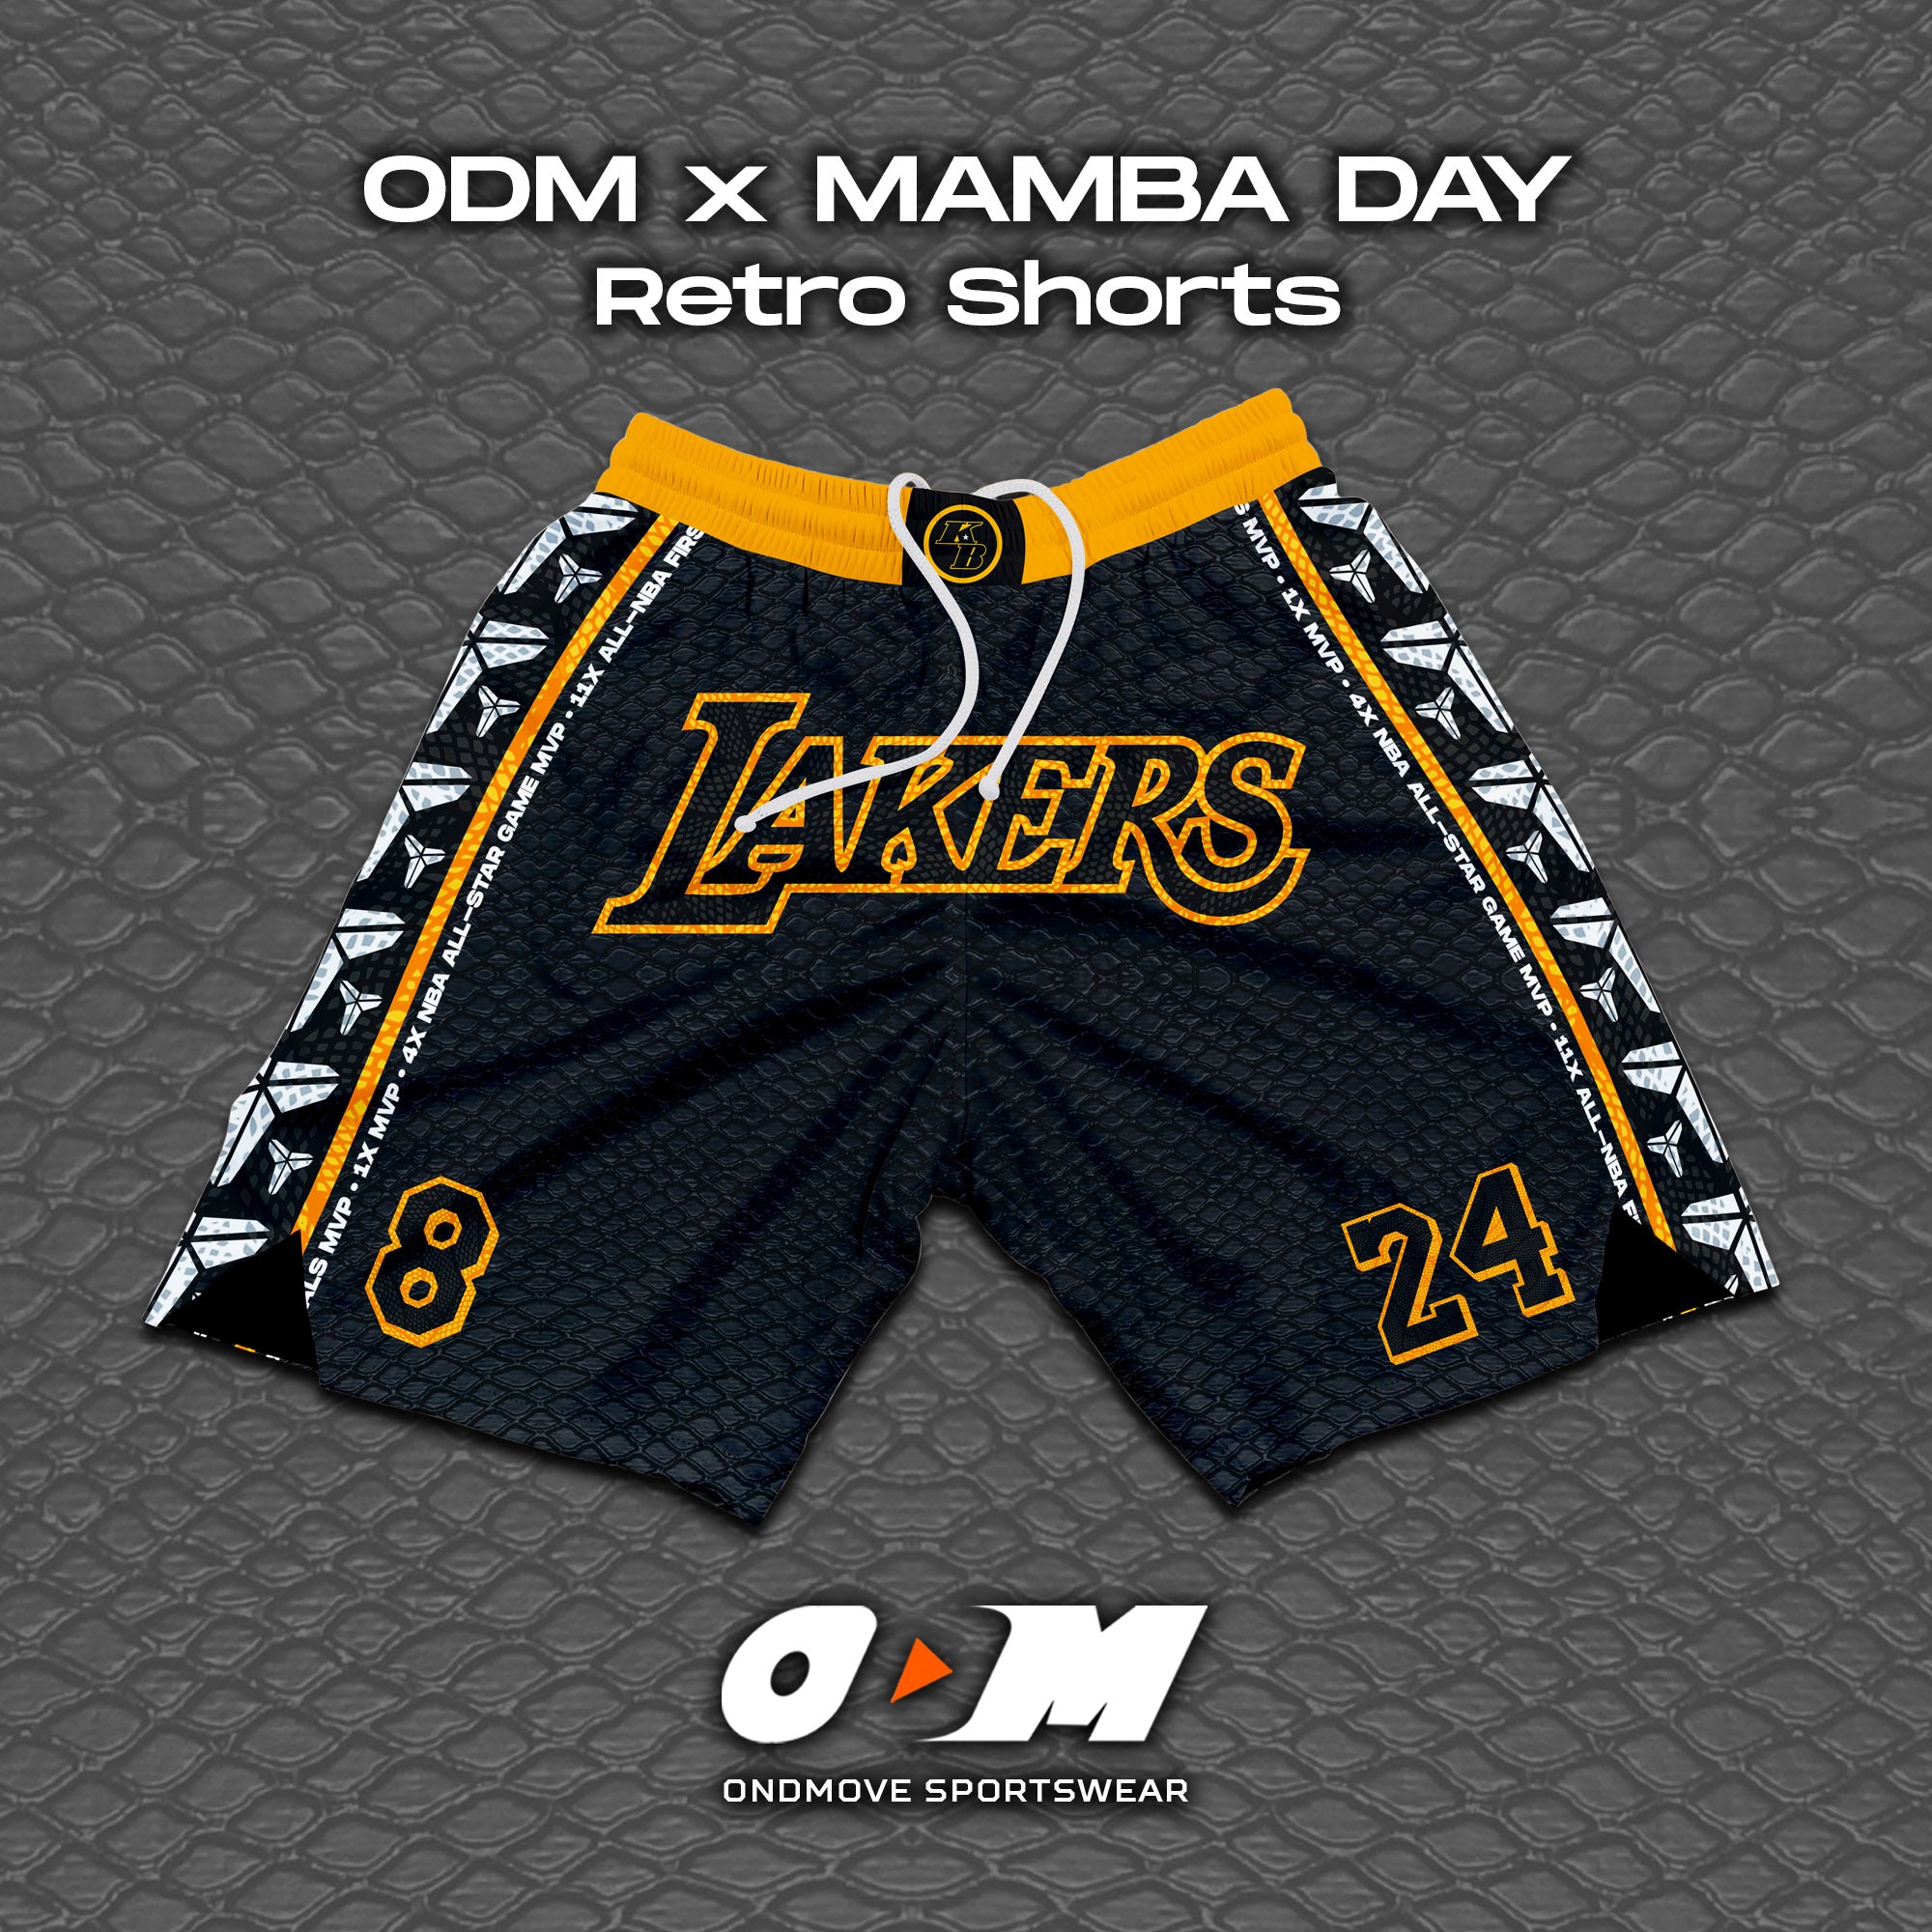 Mamba Day Retro Shorts